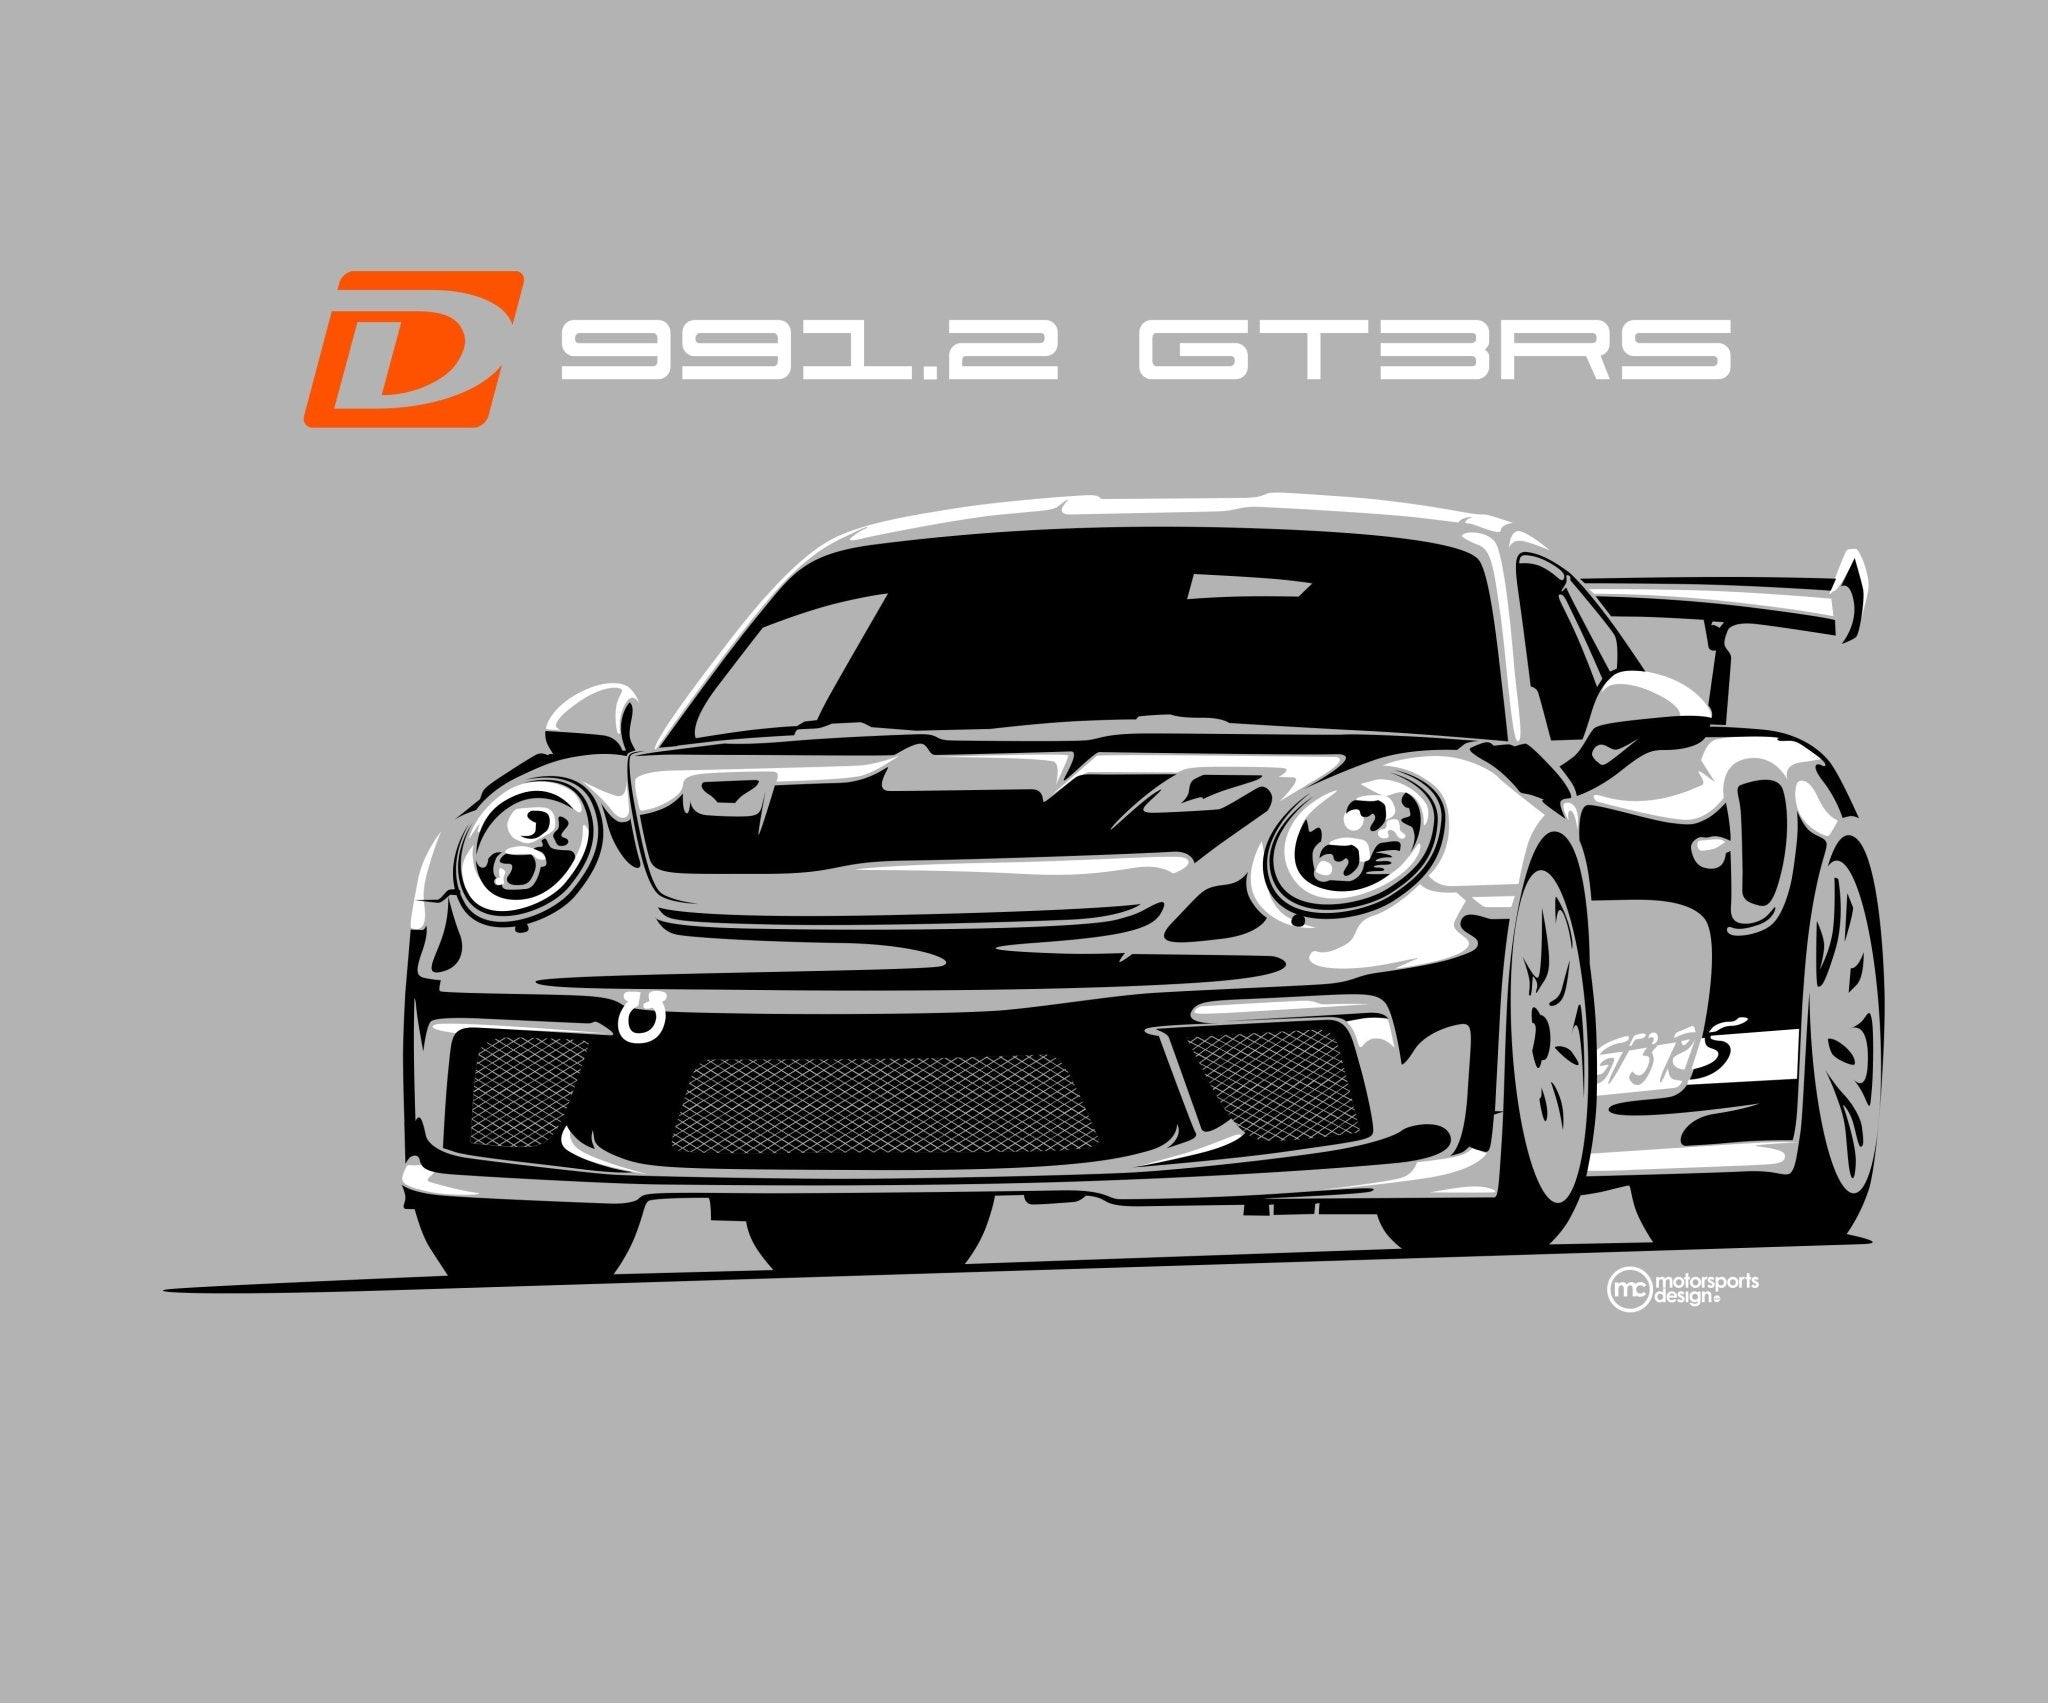 Dundon Motorsports 991.2 GT3 RS T-shirt - Dundon Motorsports